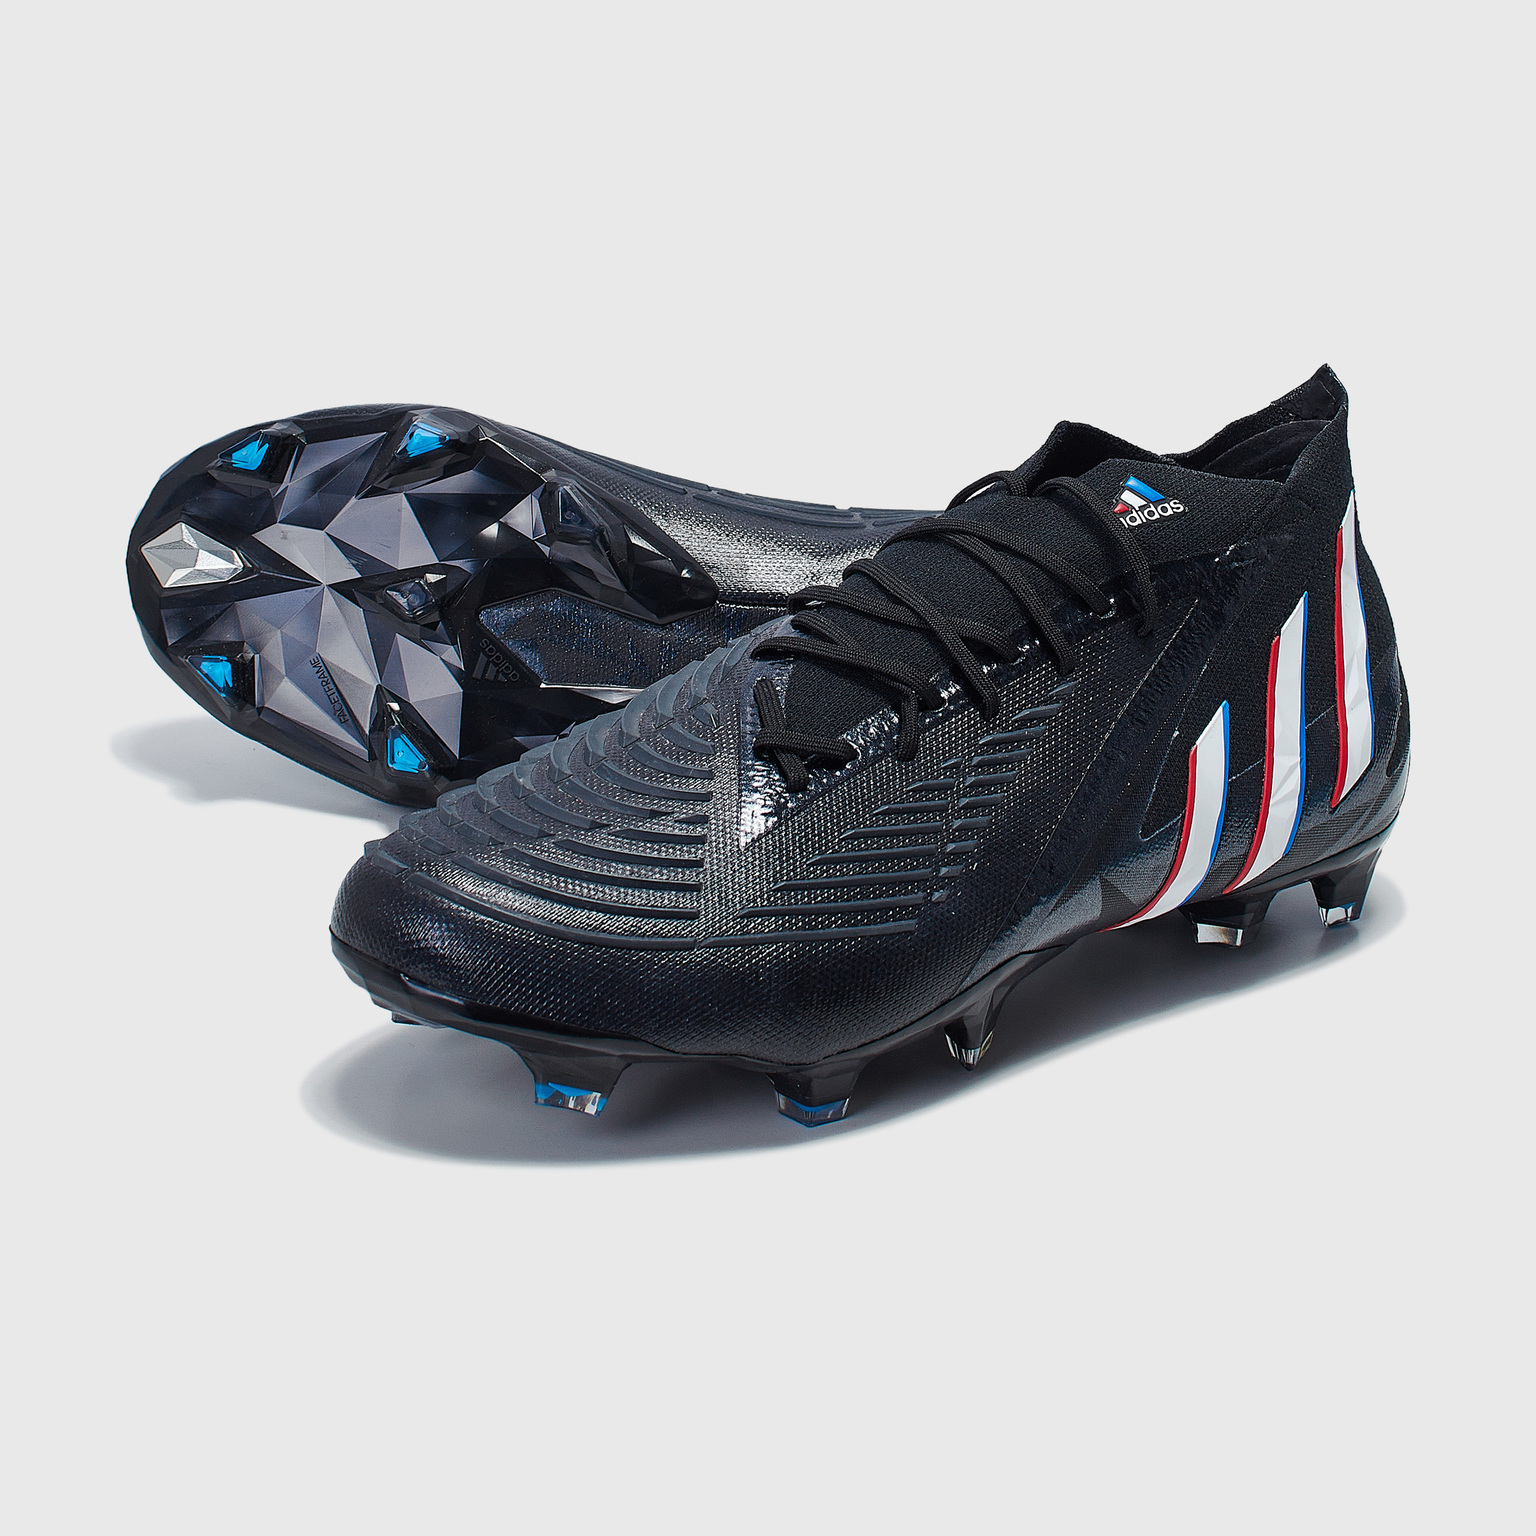 Бутсы Adidas Predator Edge.1 FG H02935 – купить бутсы в интернет магазине  Footballstore, цена, фото, отзывы